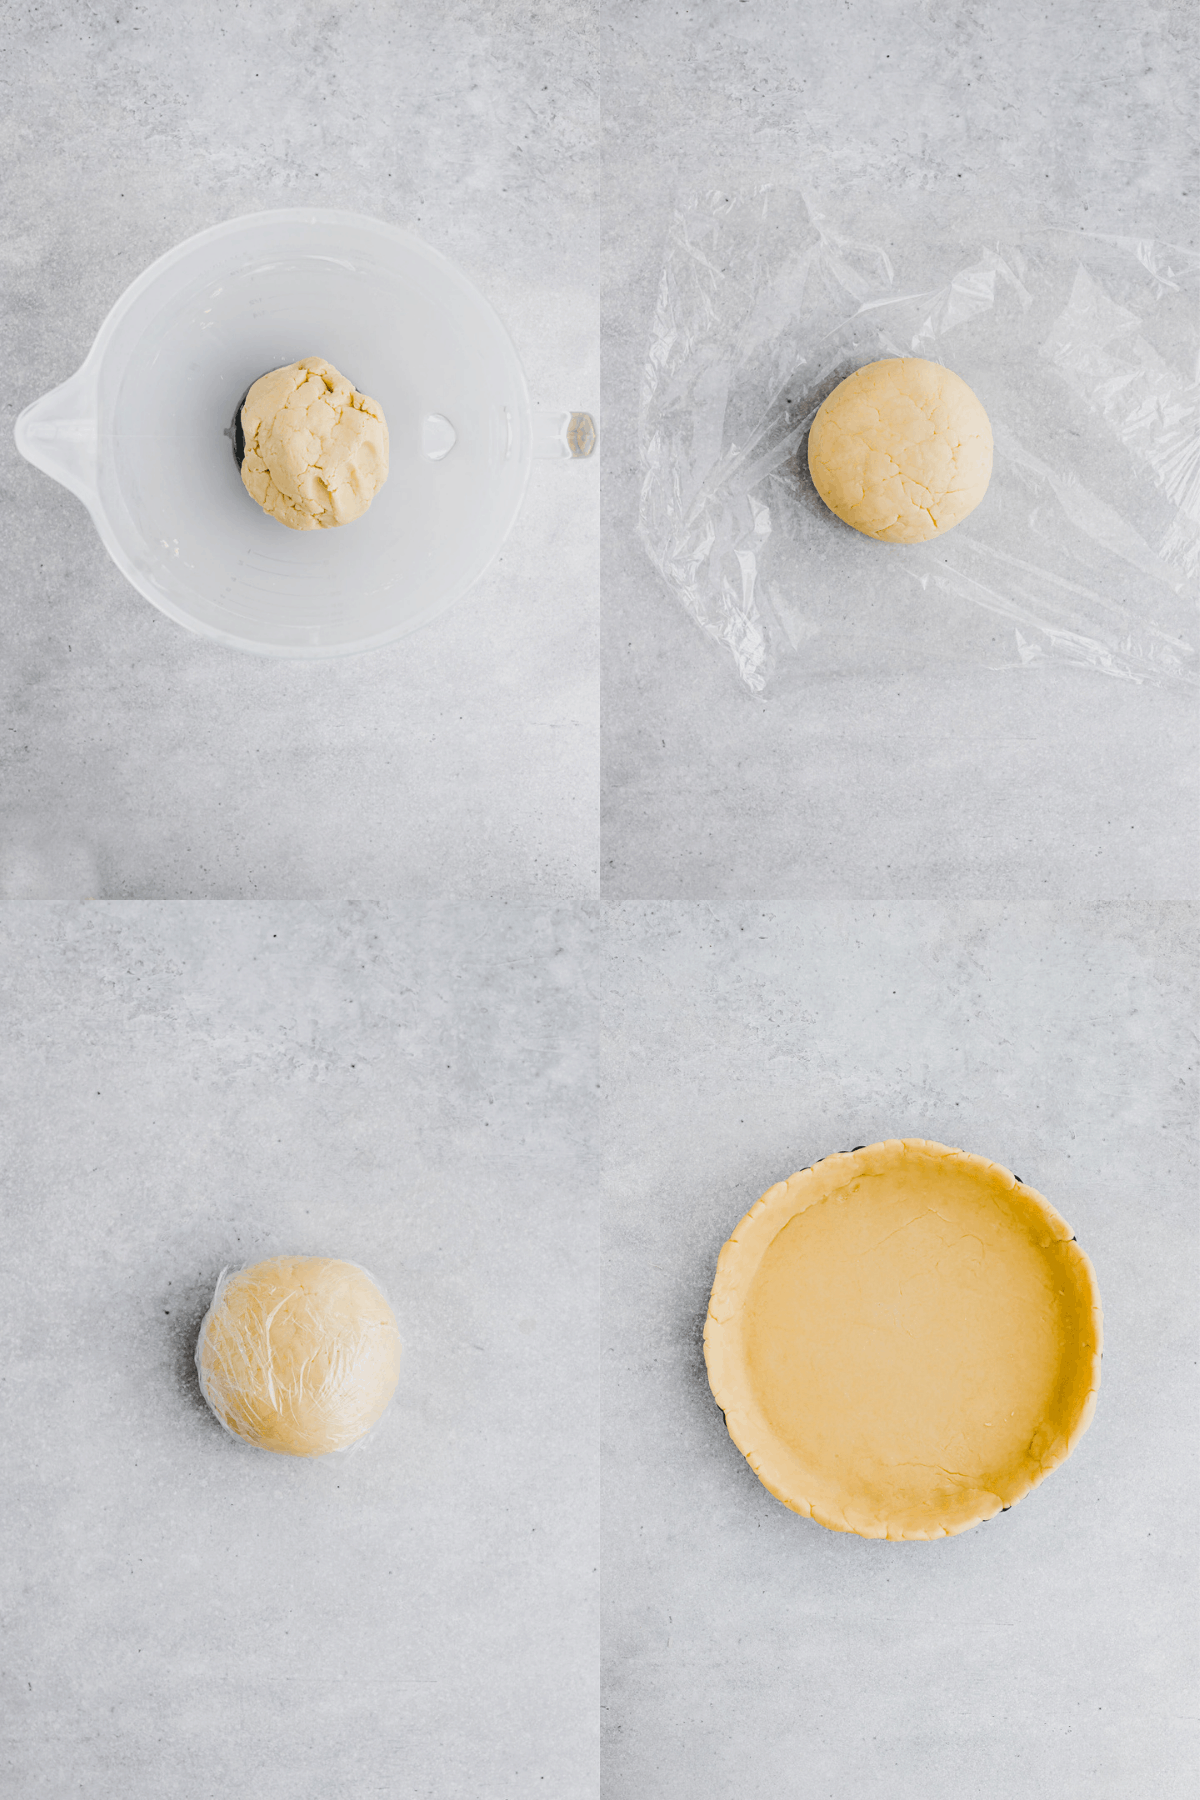 Leek & Cheese Quiche Recipe Step-5-8